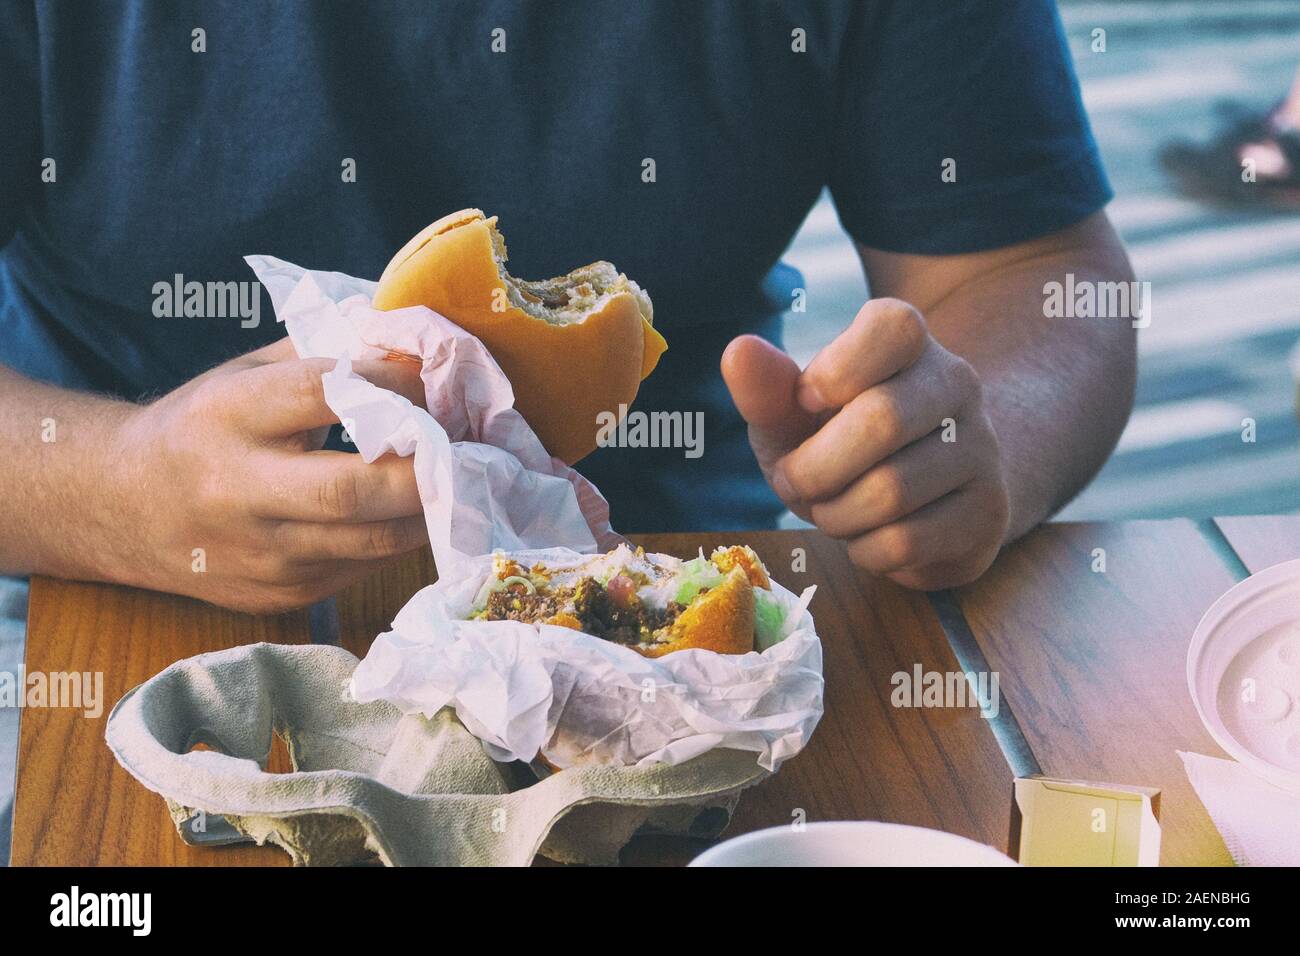 American cheese Burger in der Hand in ein Cafe. Essen in einem Restaurant und geniessen die hervorragende fast food. Getönten Bild. Stockfoto